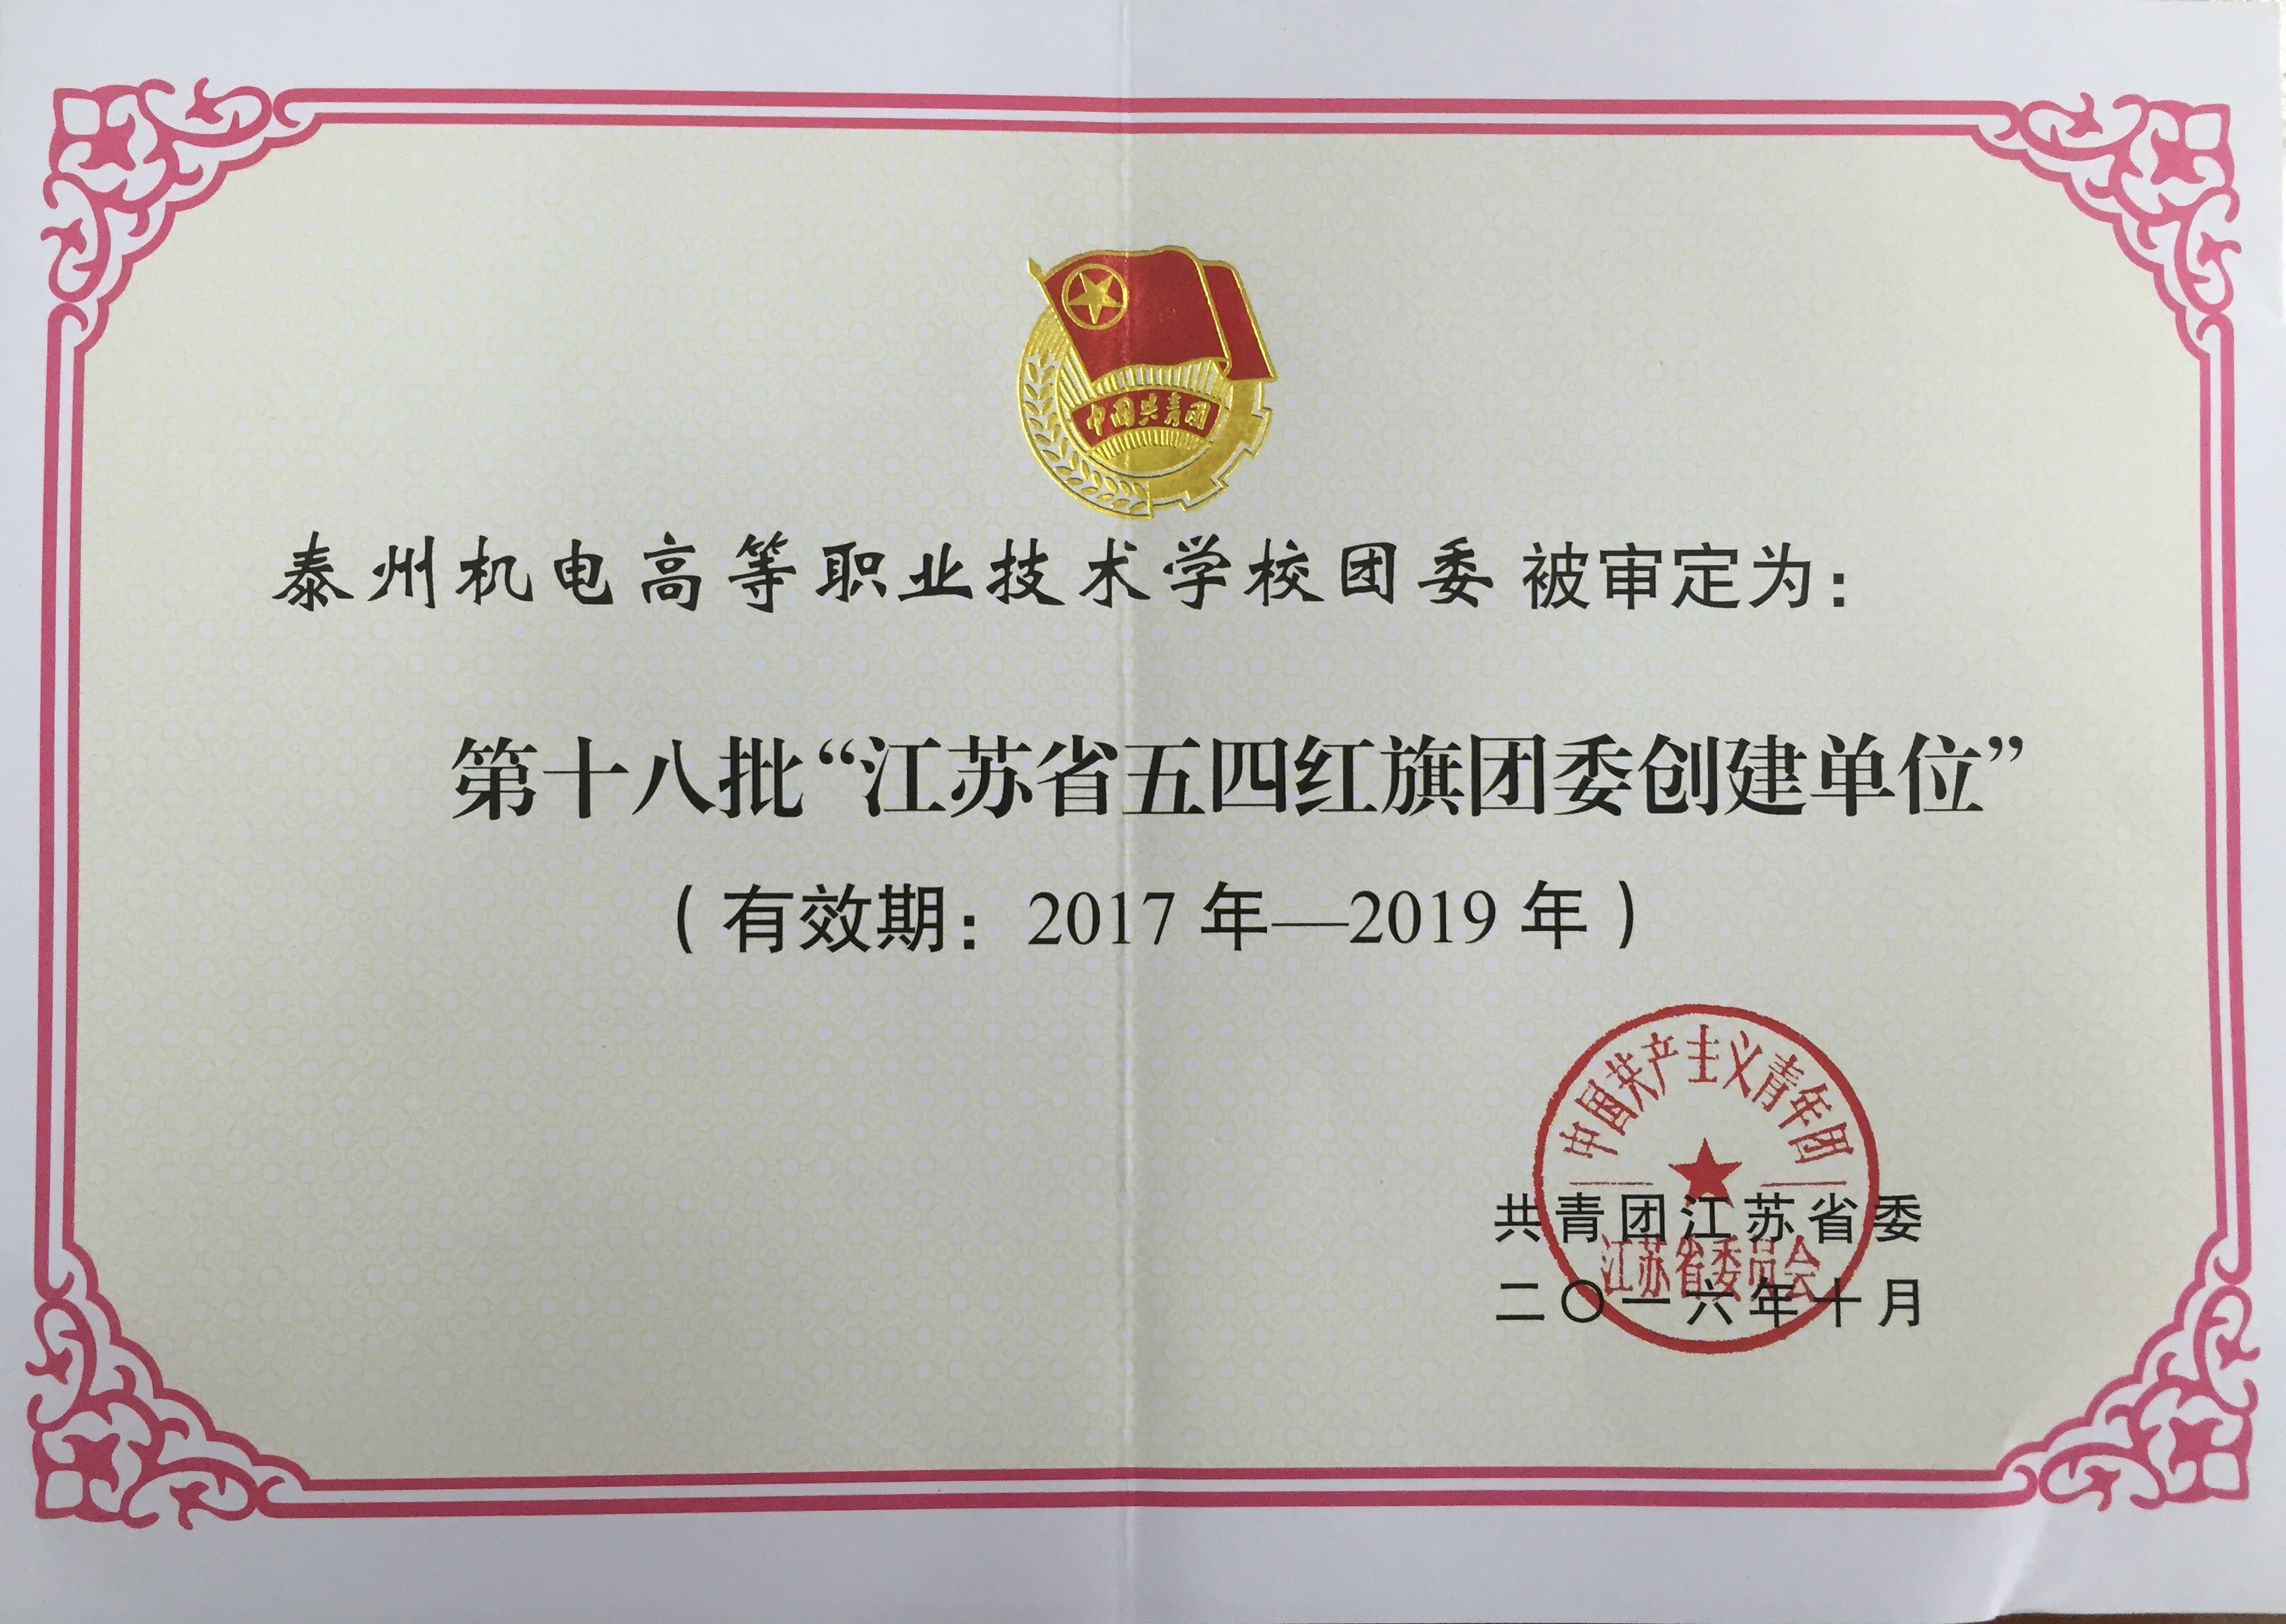 我校被团省委审定为“江苏省五四红旗团委”创建单位